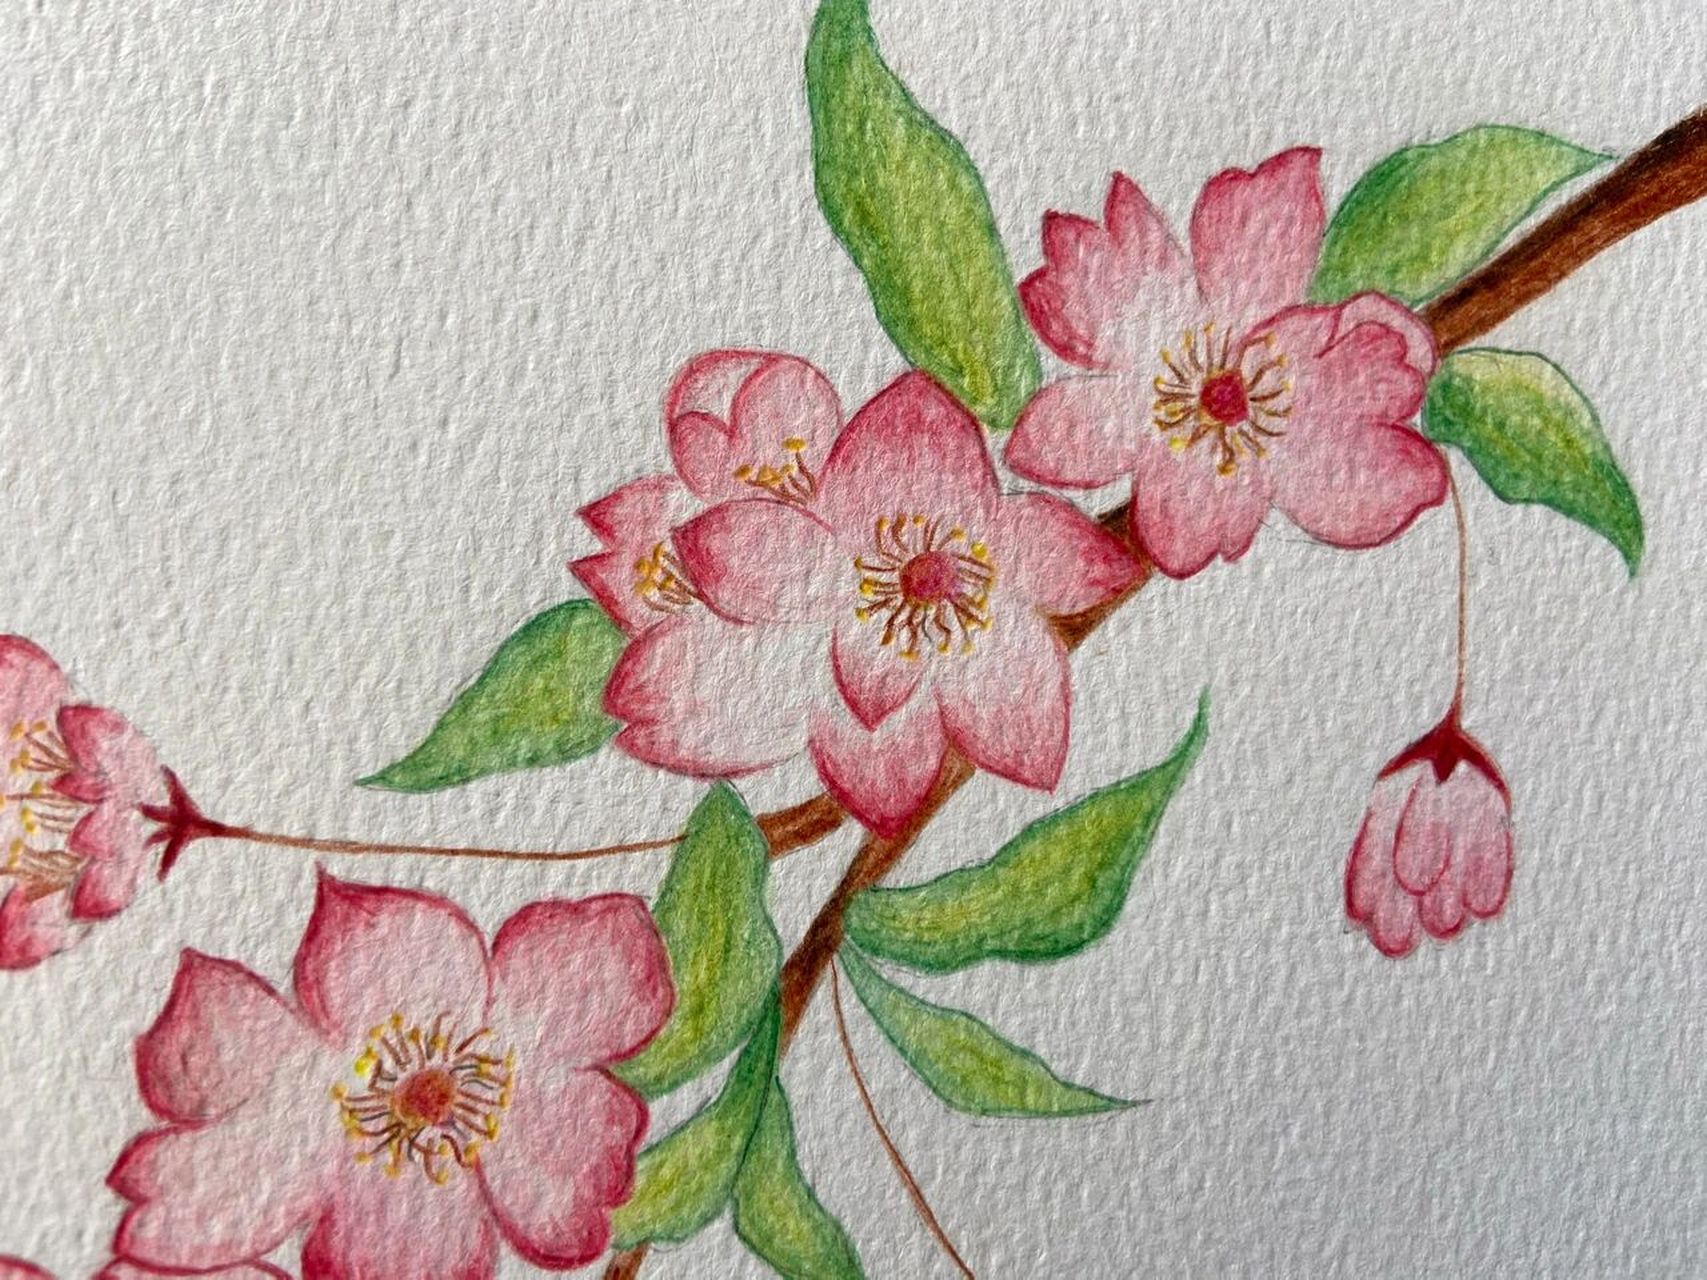 彩铅桃花 最近画花画得有点着迷,水溶性彩铅也可以有些许水彩的感觉